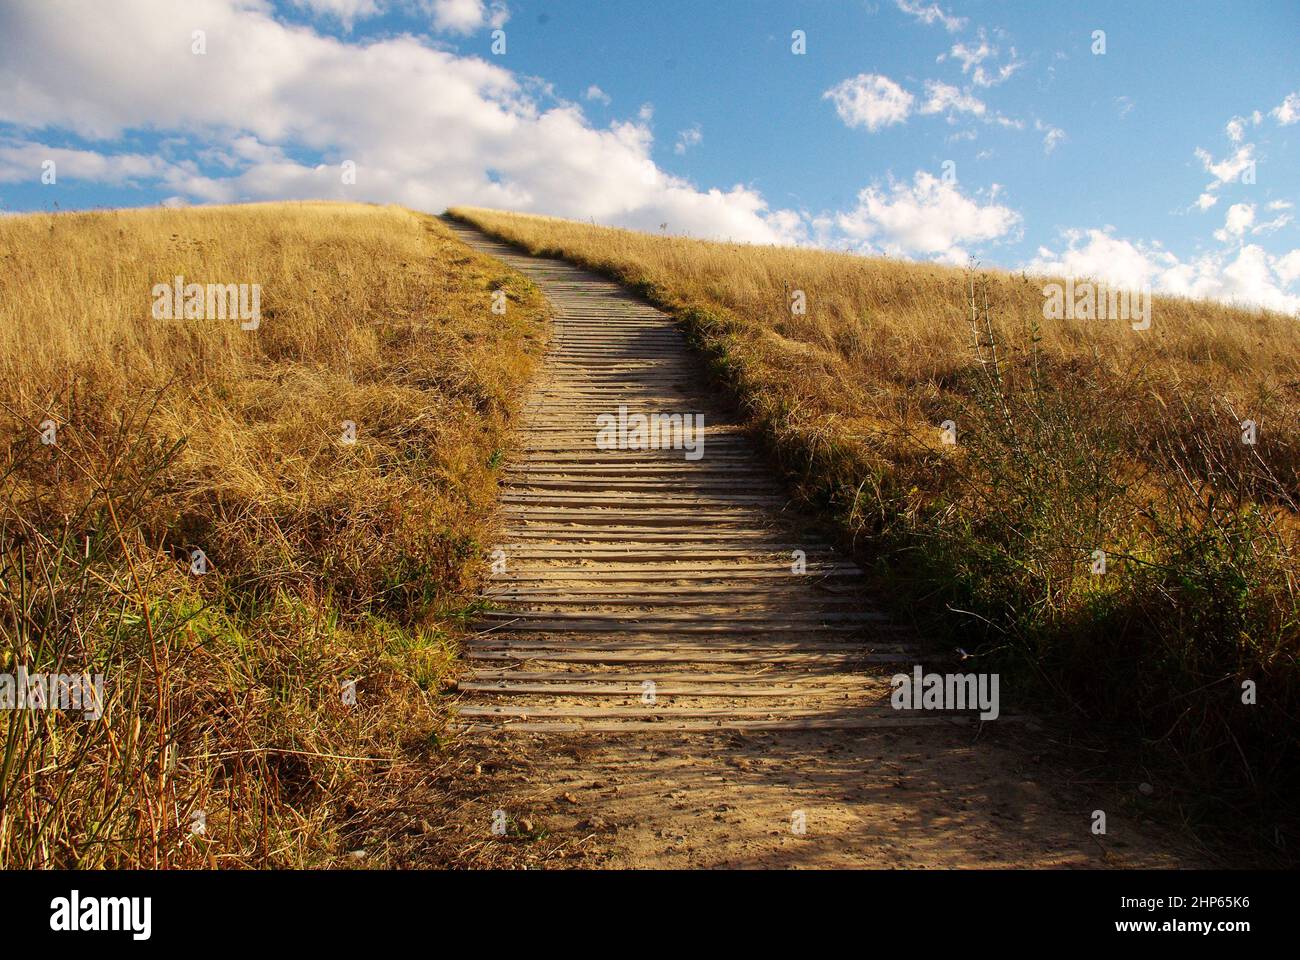 Photo panoramique d'un sentier en haut d'une colline d'un champ de gazon fanant avec des planches en bois pour les pieds Banque D'Images